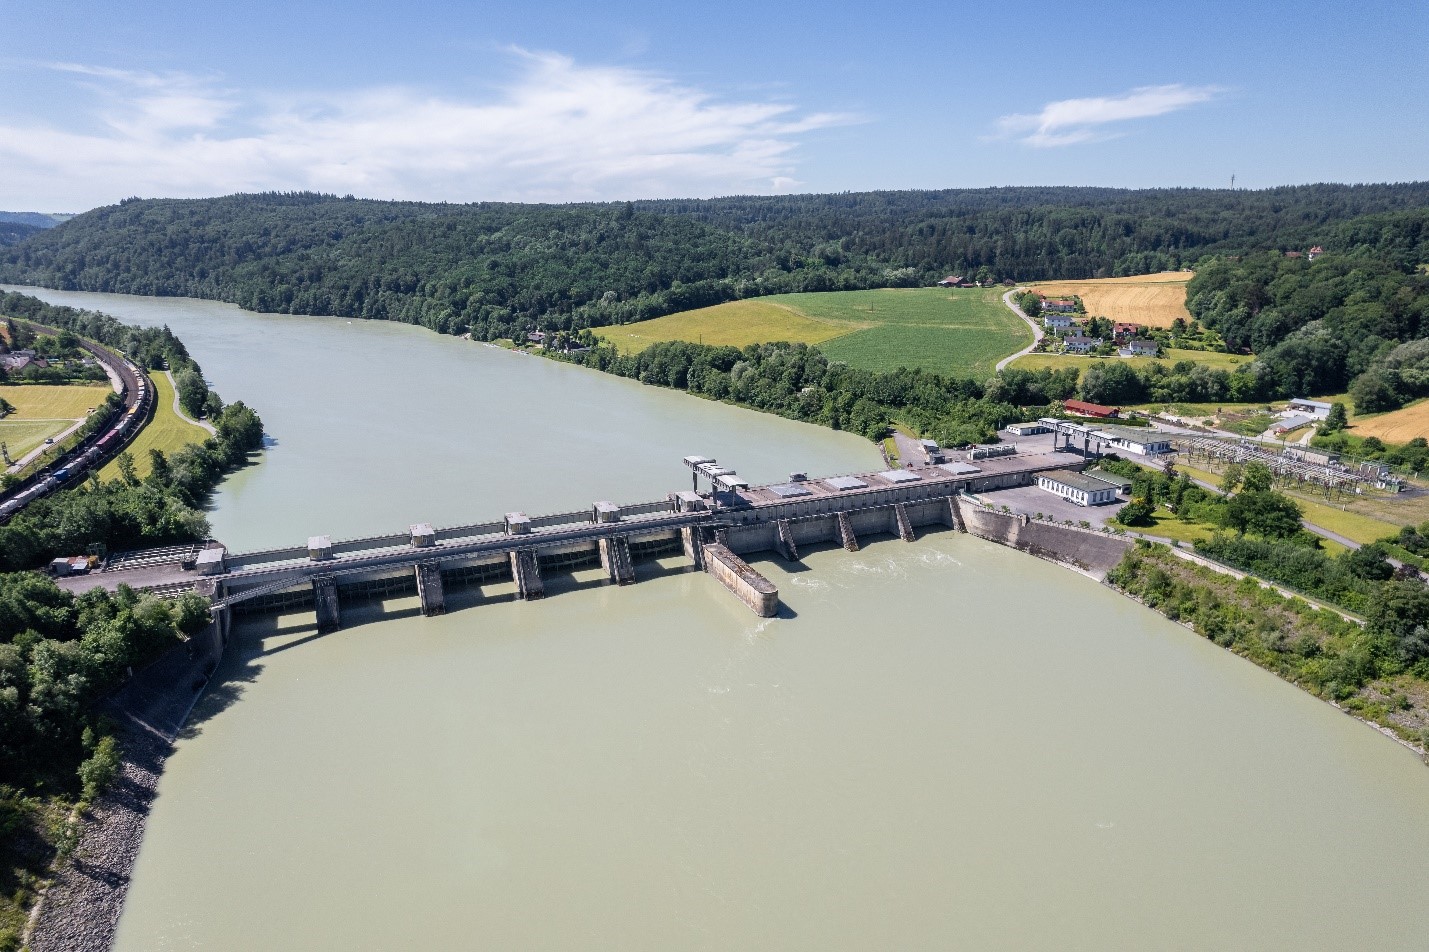 Das Wasserkraftwerk von VERBUND in Passau Ingling, aus dem der WACKER-Standort Burghausen zukünftig Grünstrom bezieht © VERBUND